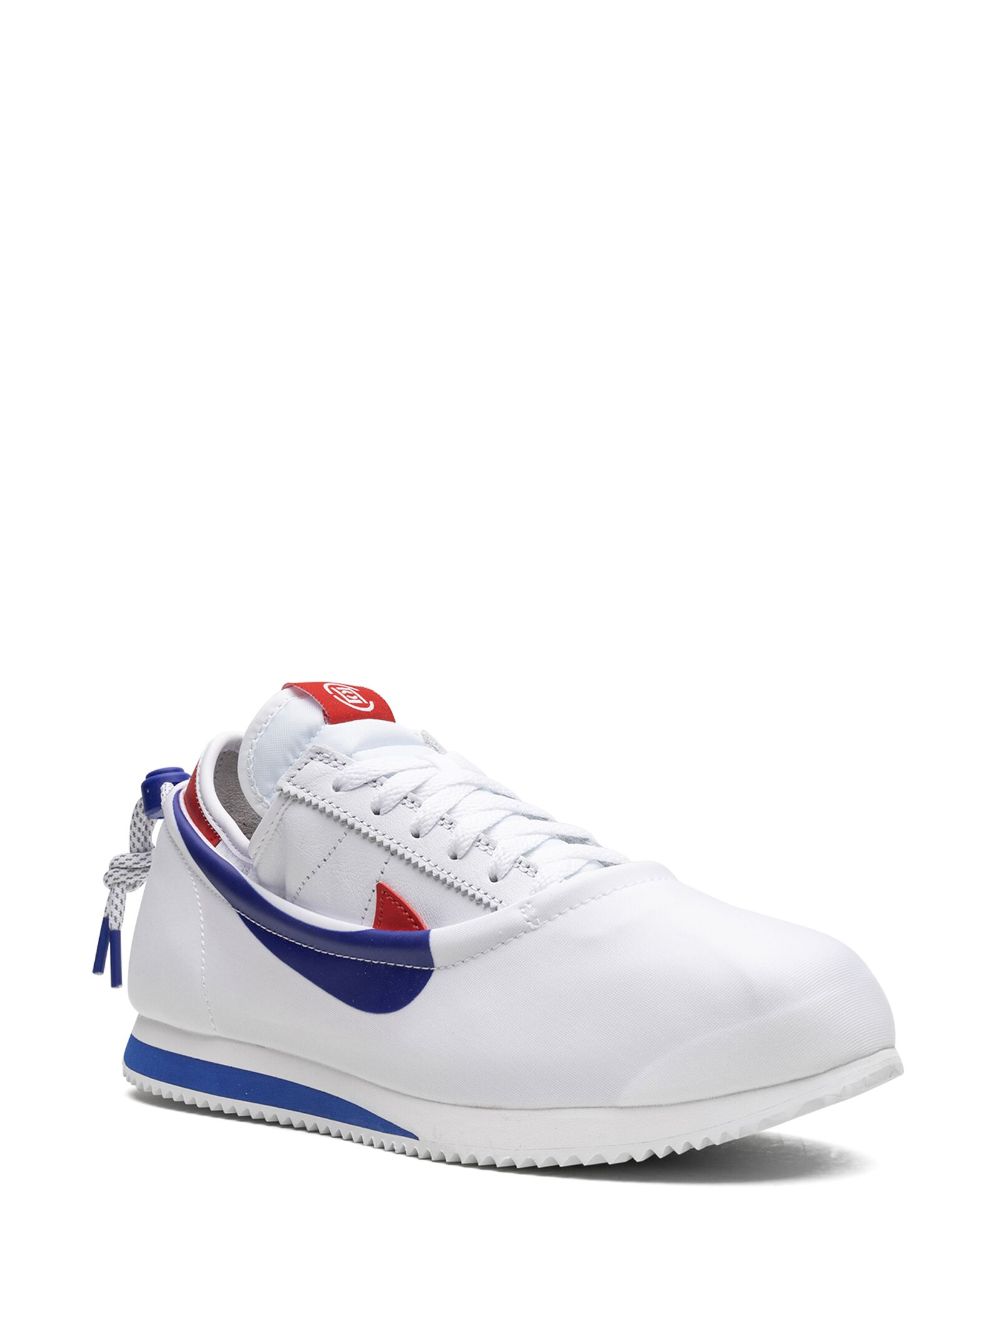 Shop Nike X Clot Cortez "white/royal/red" Sneakers